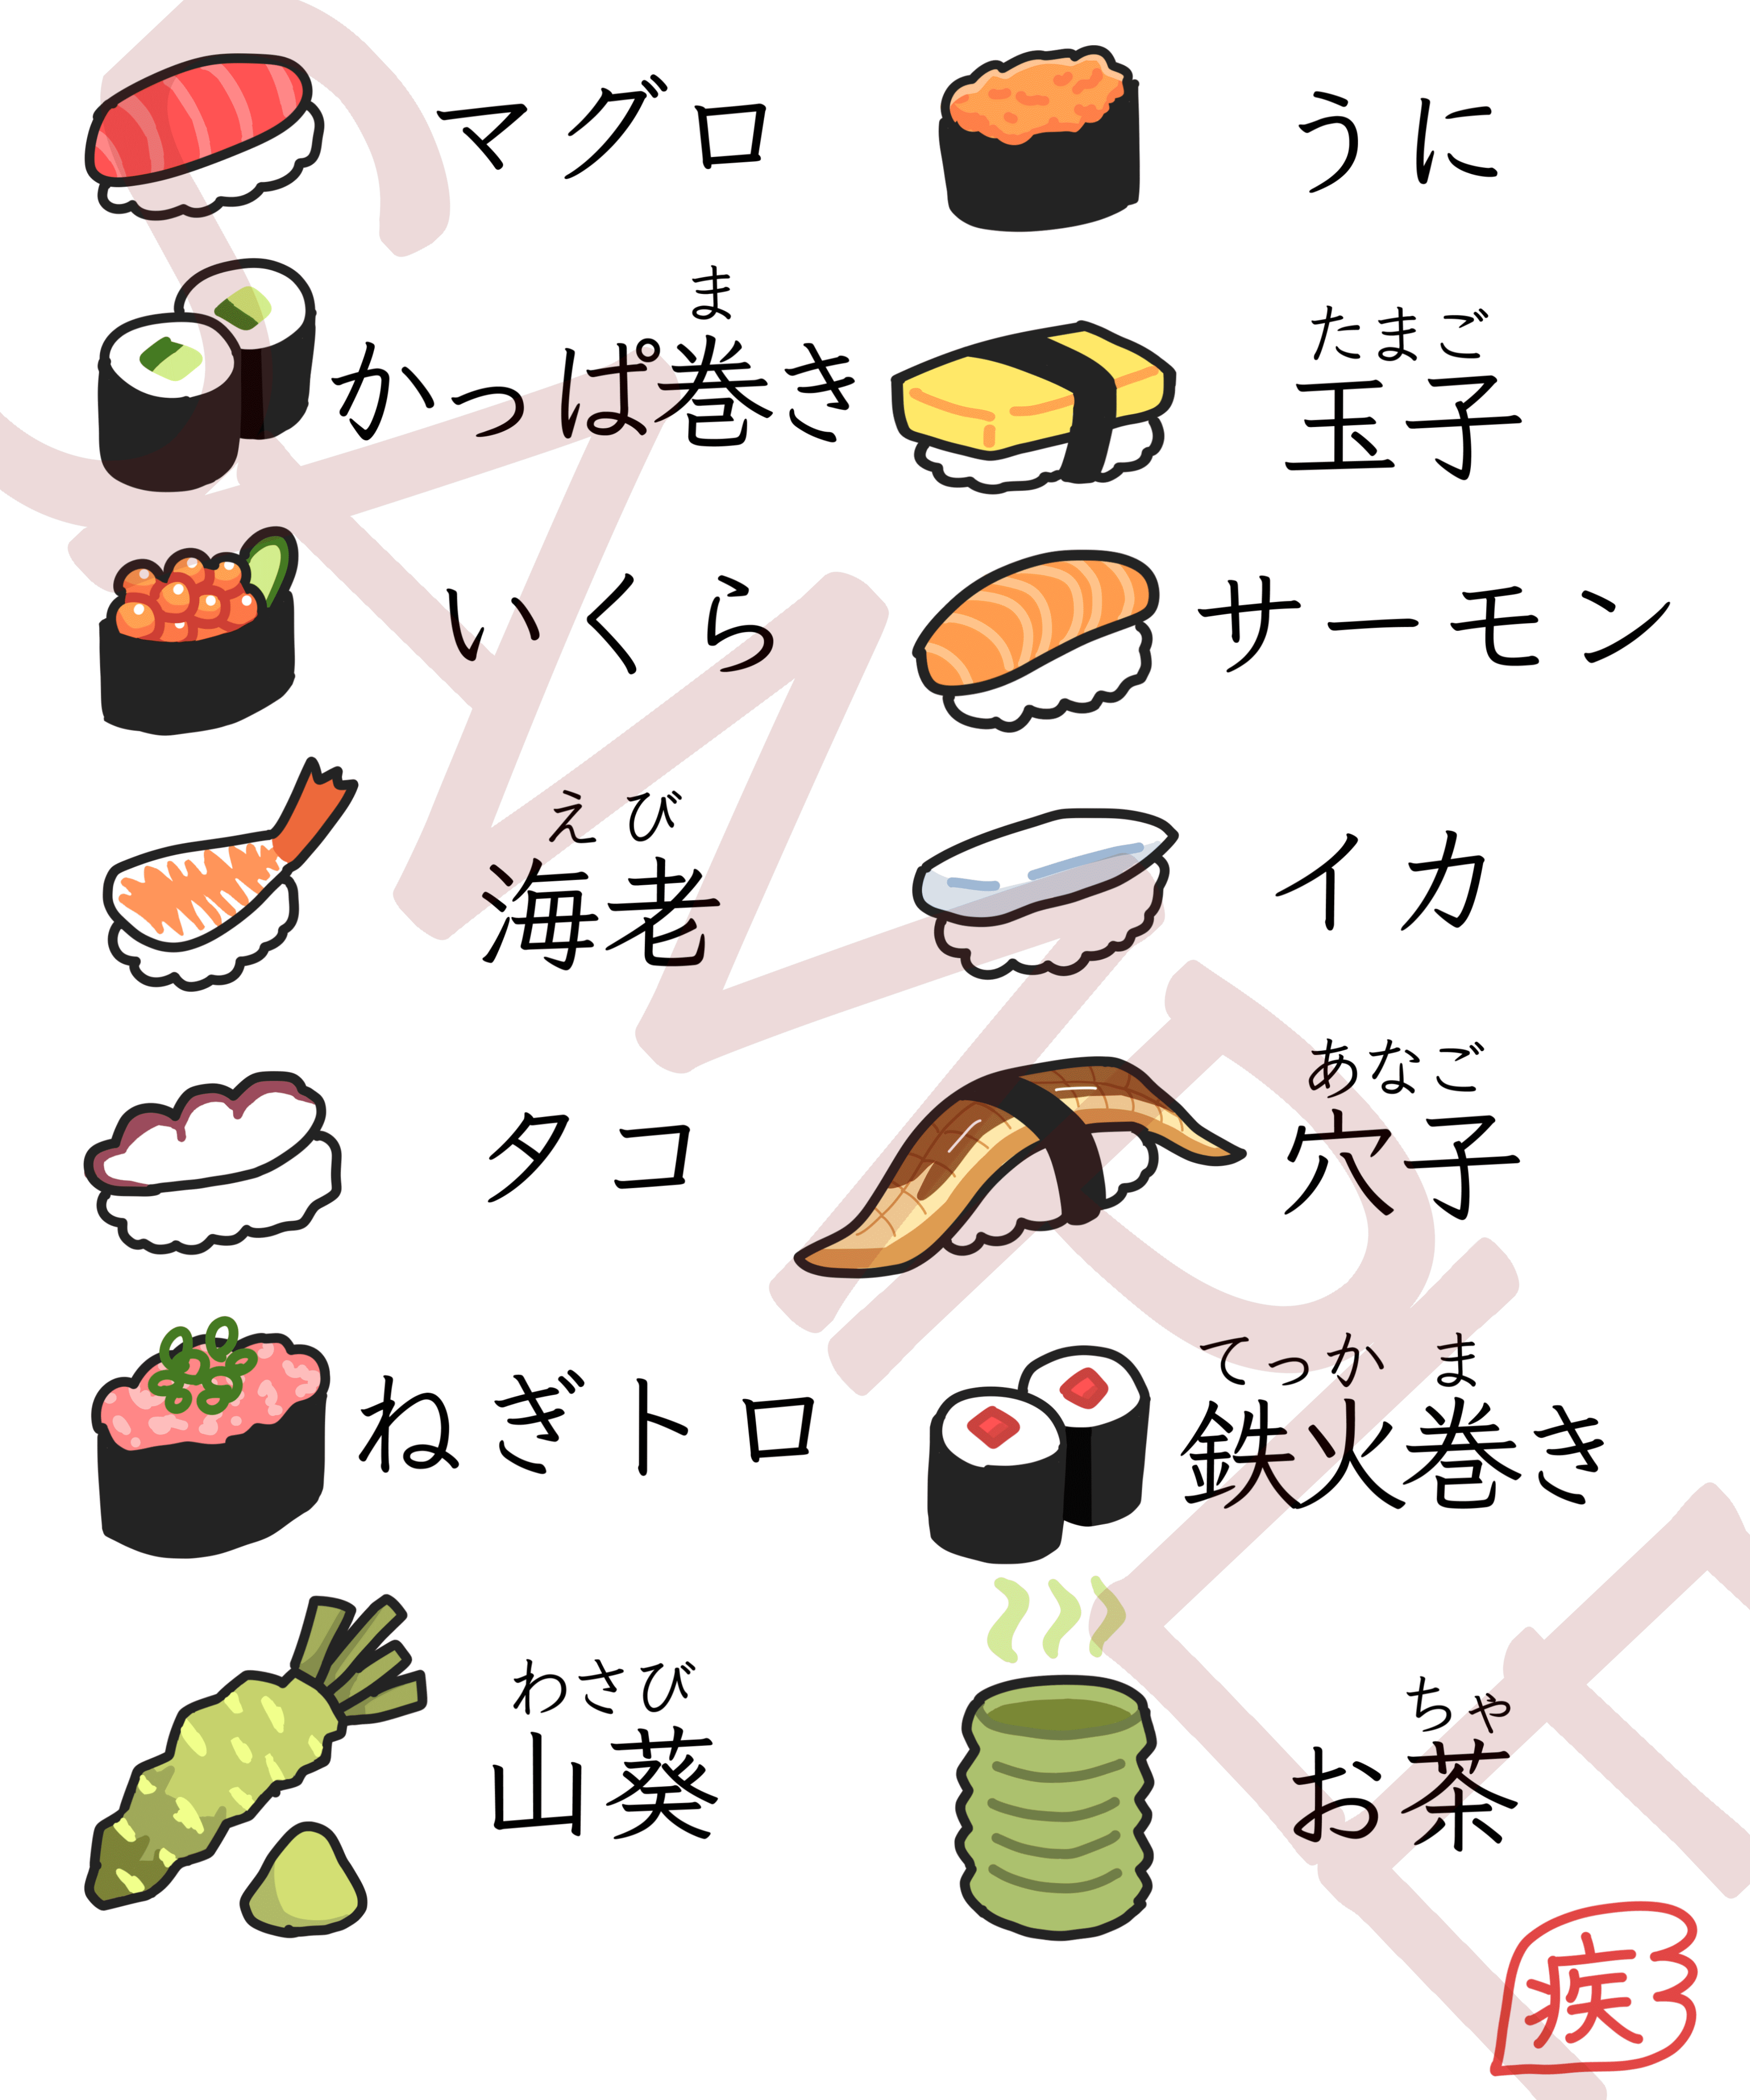 sushi goods japanese 日本 寿司 グッズ